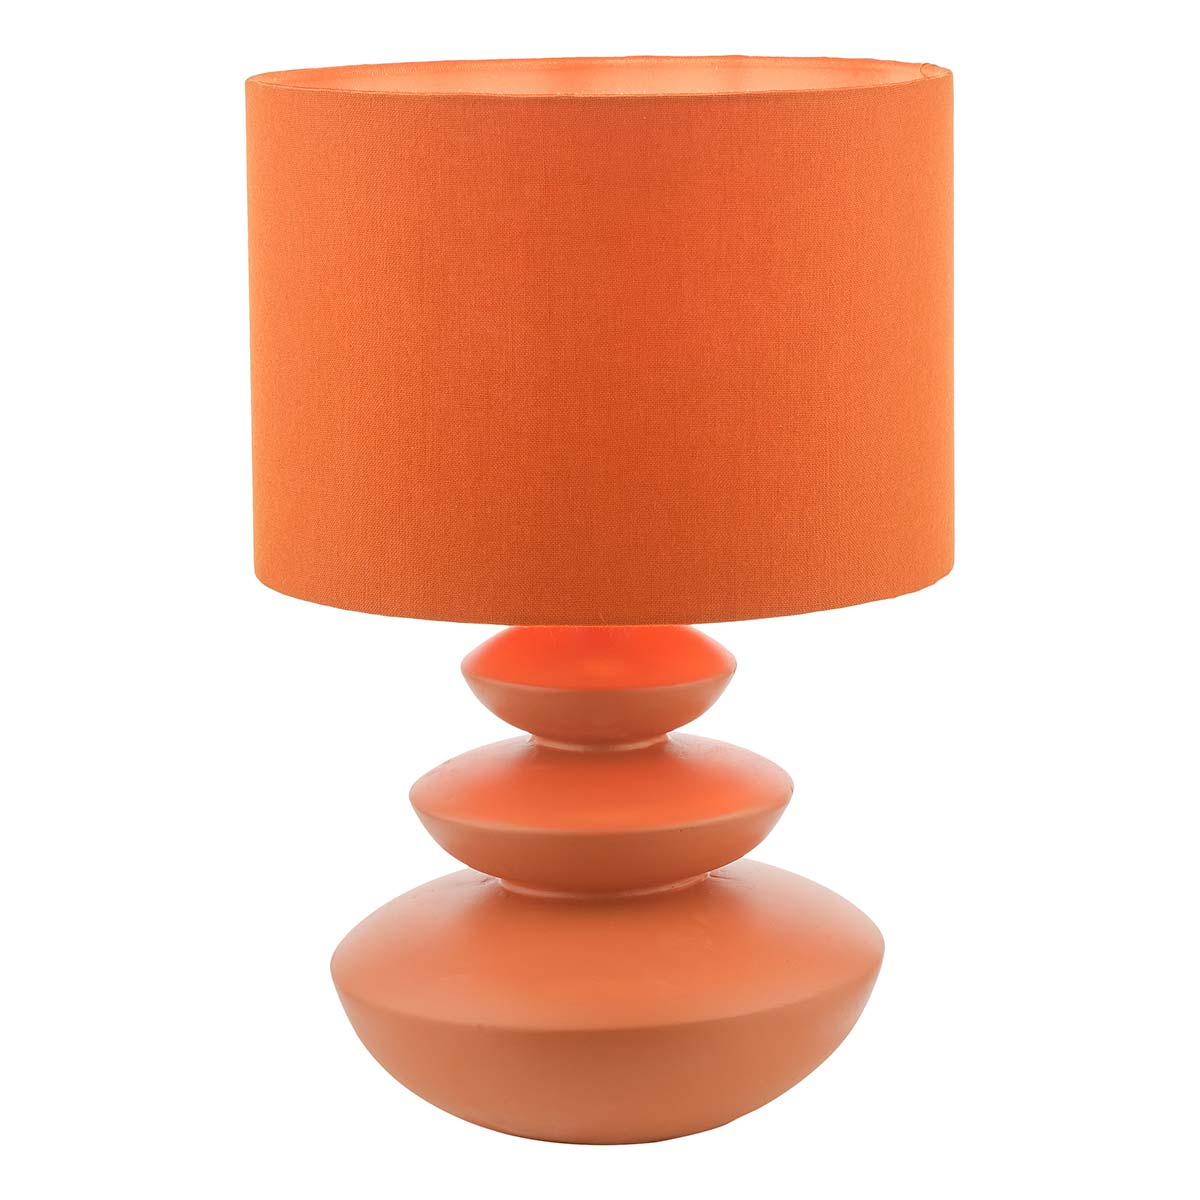 Dar Discus Ceramic Table Lamp Orange With Shade